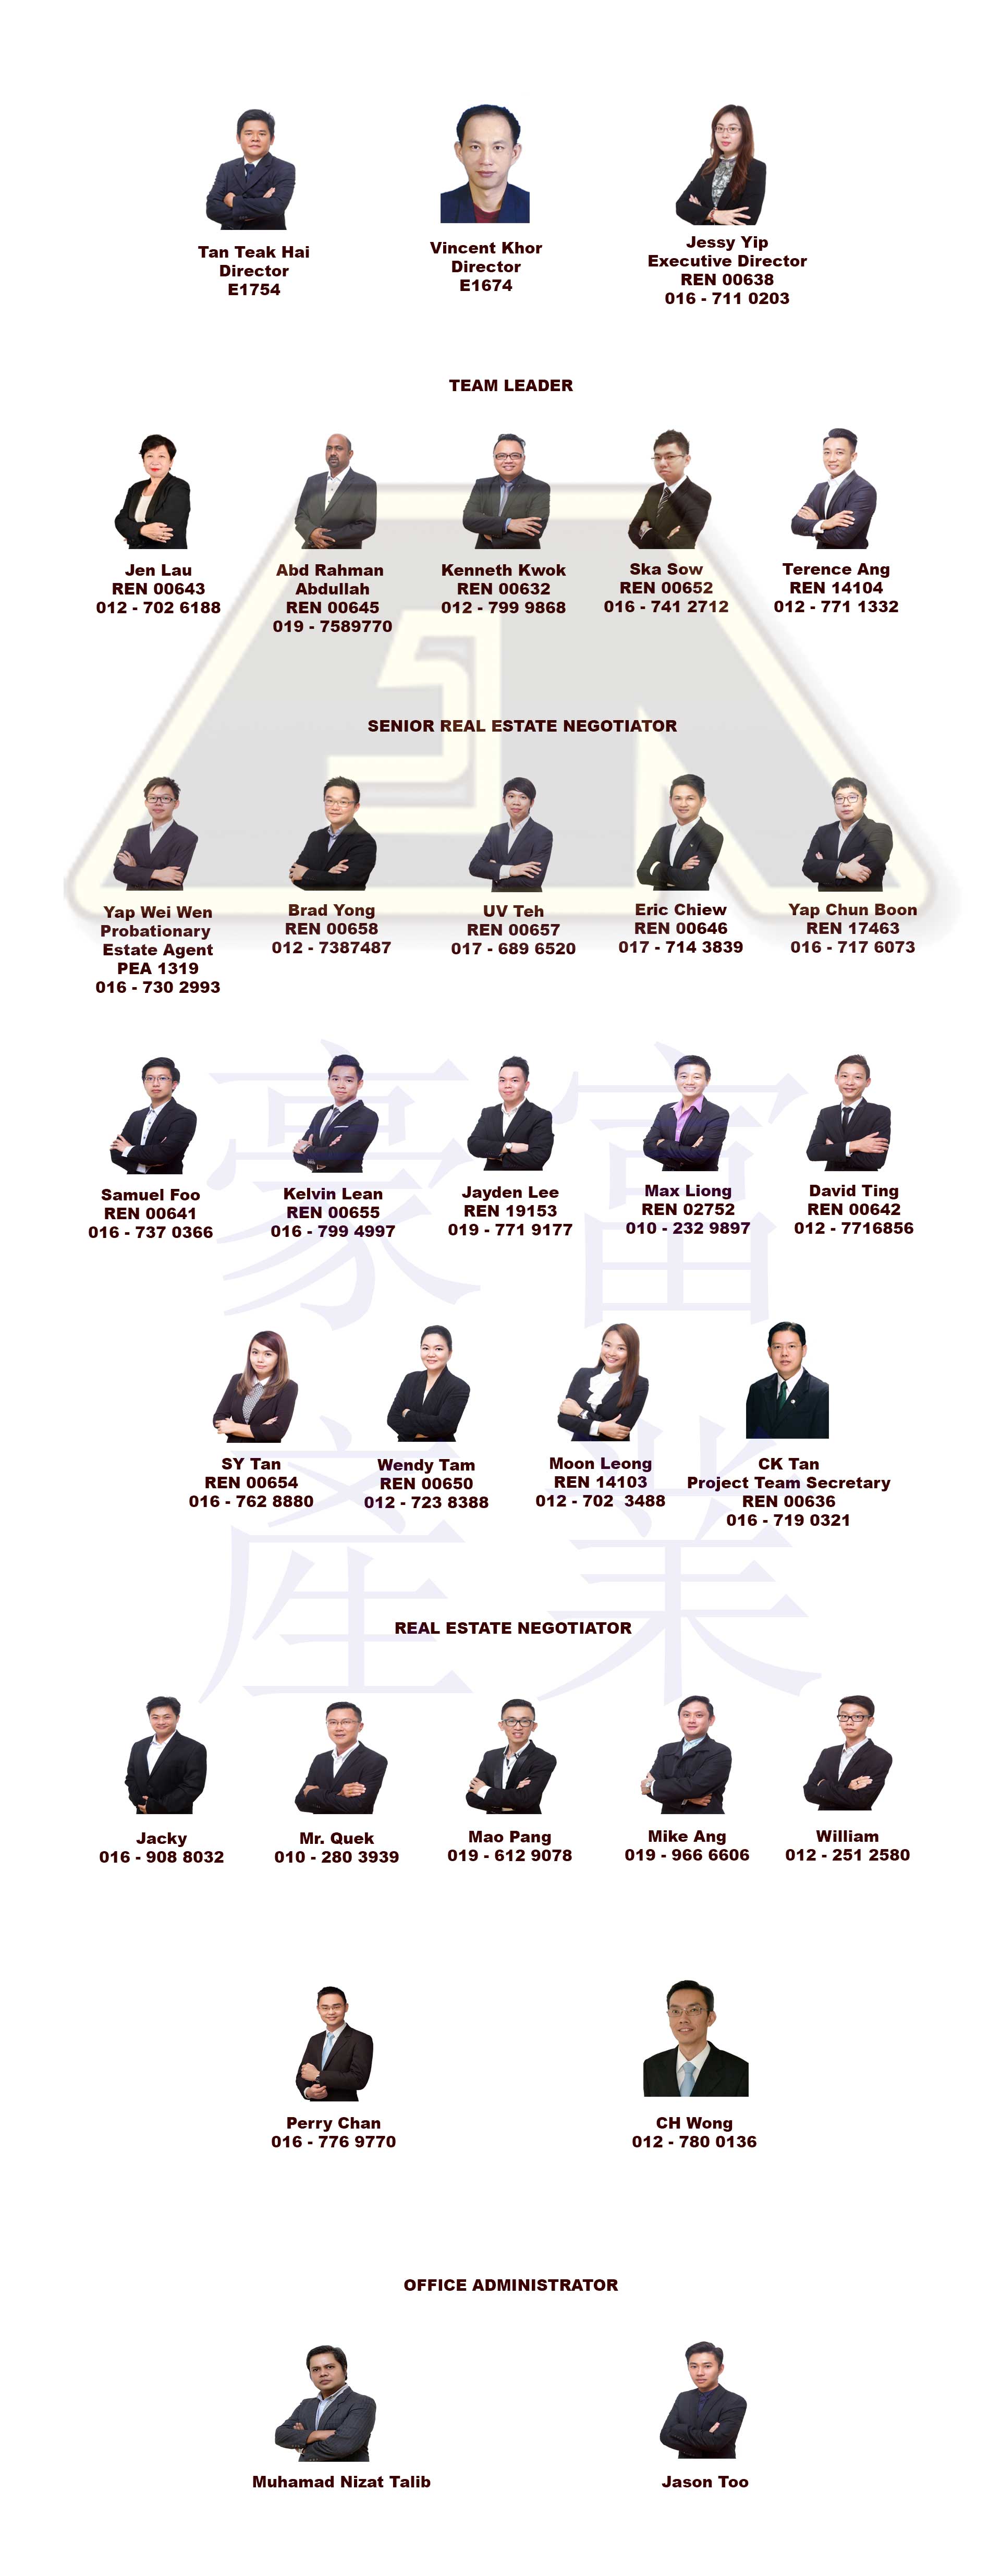 Eu As Properties Organization Chart